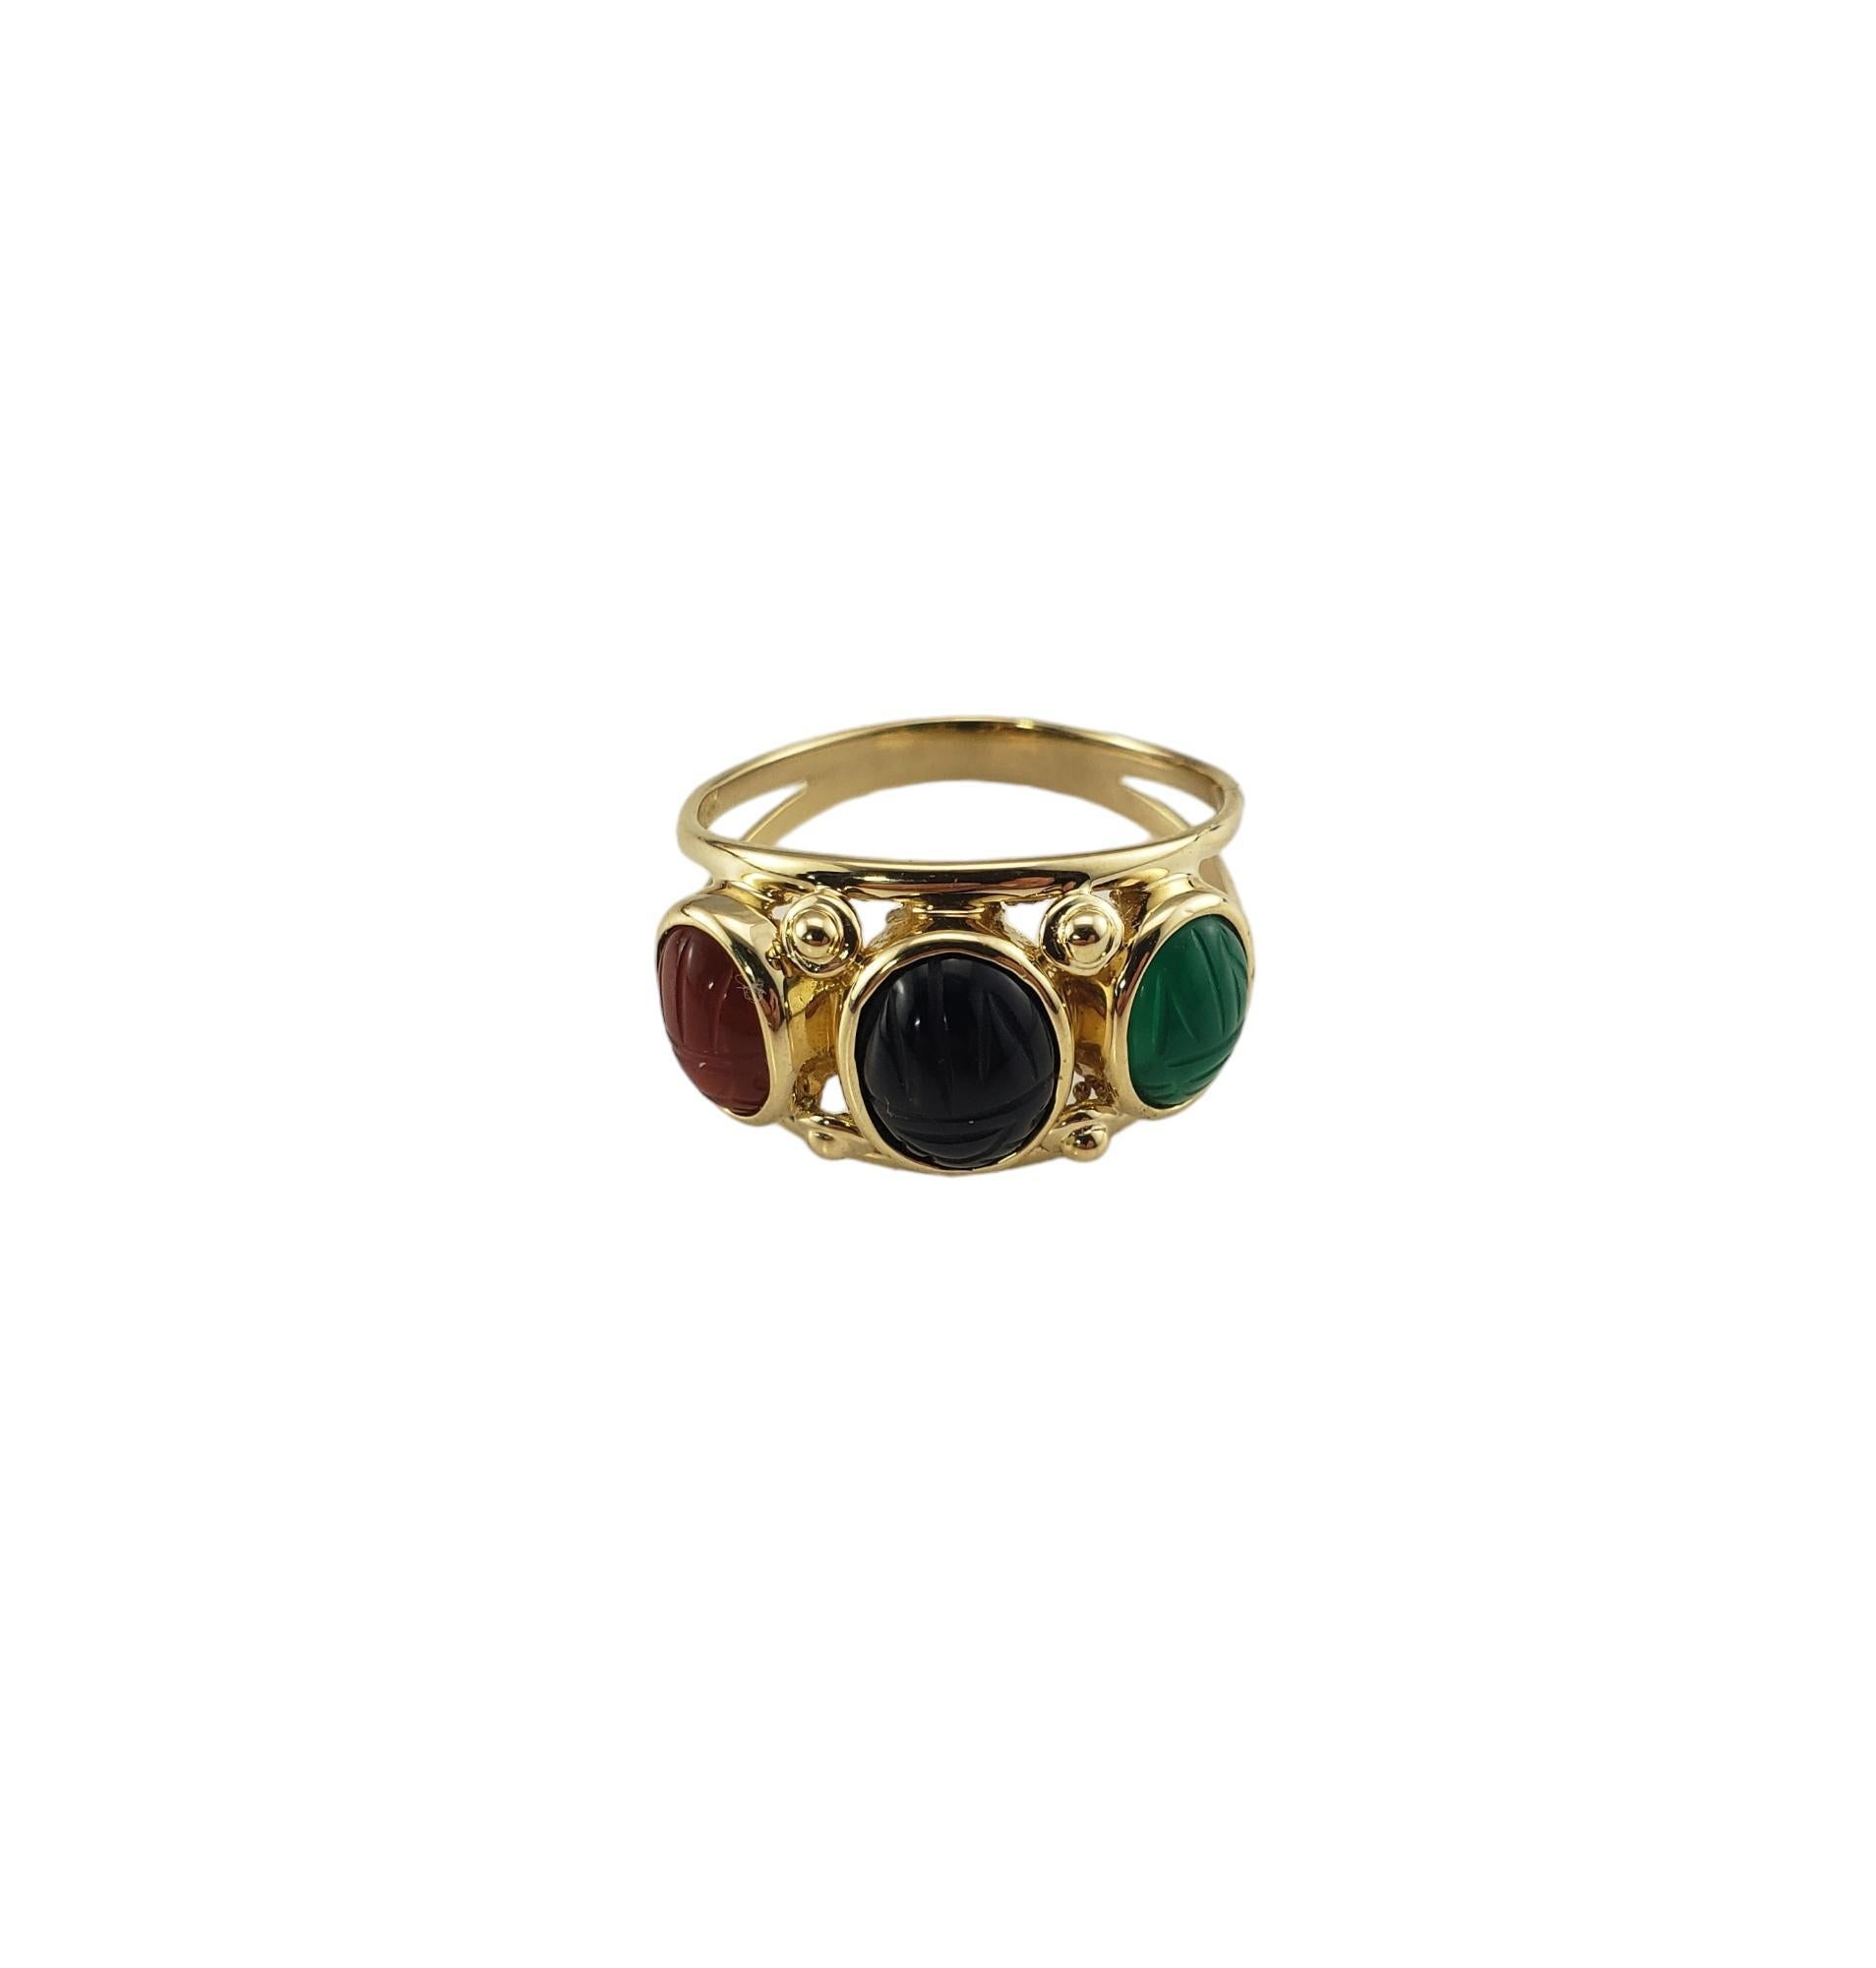 Vintage 14K Gelbgold Skarabäus Ring Größe 9,75-10

Dieser elegante Ring besteht aus drei ovalen Steinen im Skarabäus-Design (Karneol, Onyx, Jade), die in wunderschön detailliertes 14-karätiges Gelbgold gefasst sind. 

 Breite:  13 mm.  

Schaft: 3